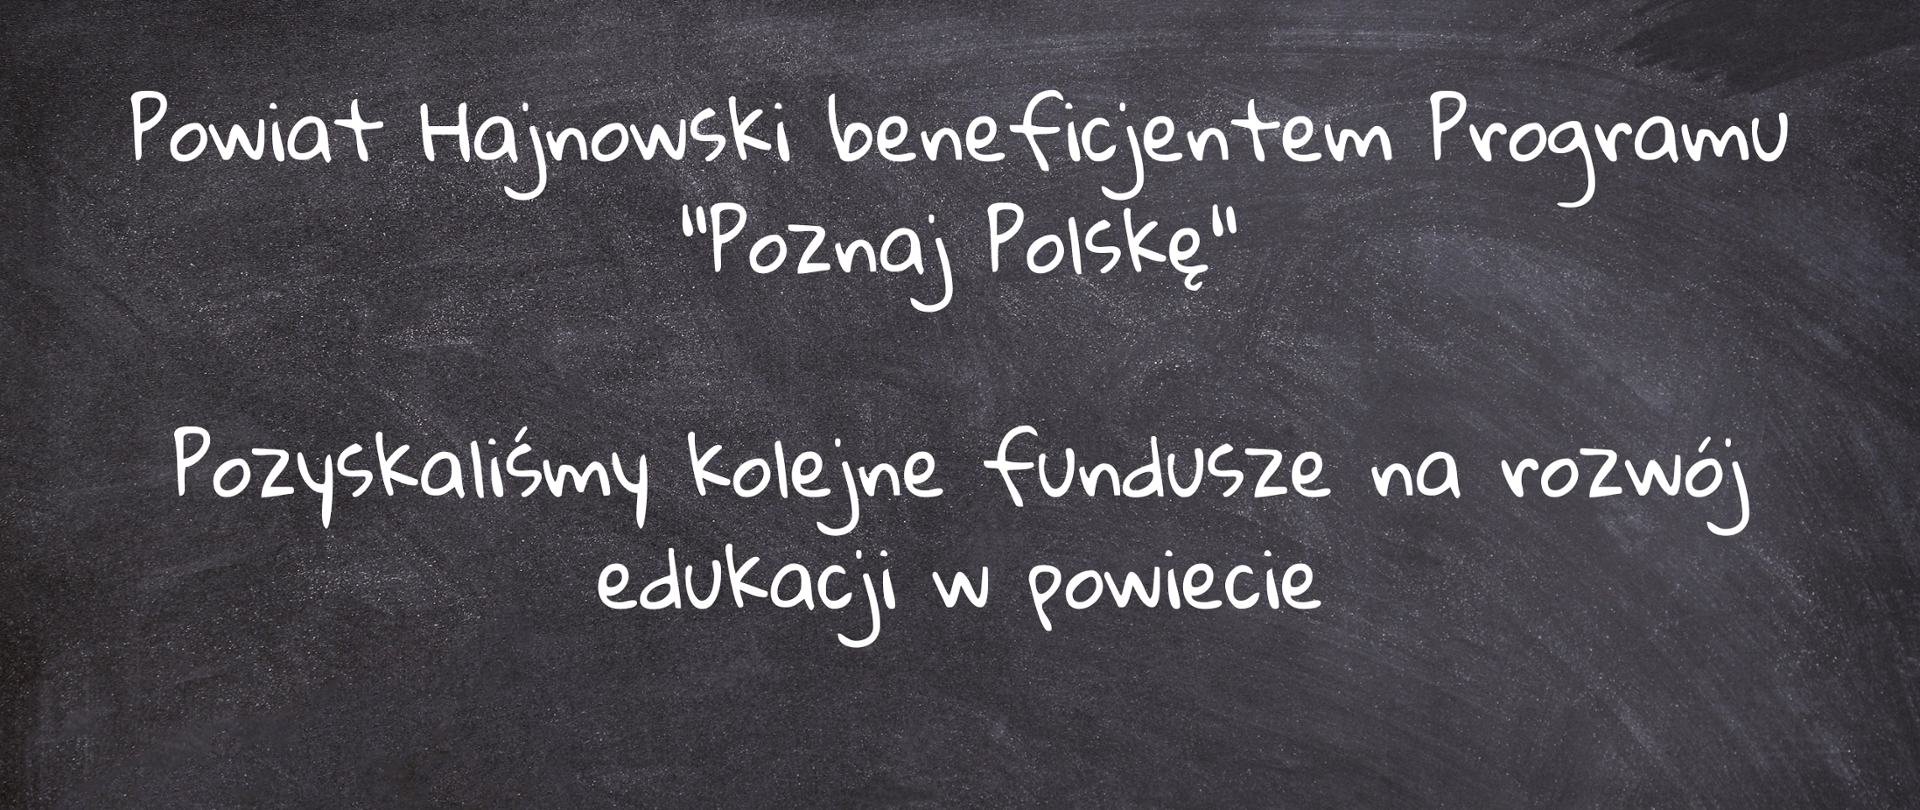 Grafika tablicy, a na niej napisy pisane kredą: Powiat Hajnowski beneficjentem Programu "Poznaj Polskę"
Pozyskaliśmy kolejne fundusze na rozwój edukacji w powiecie